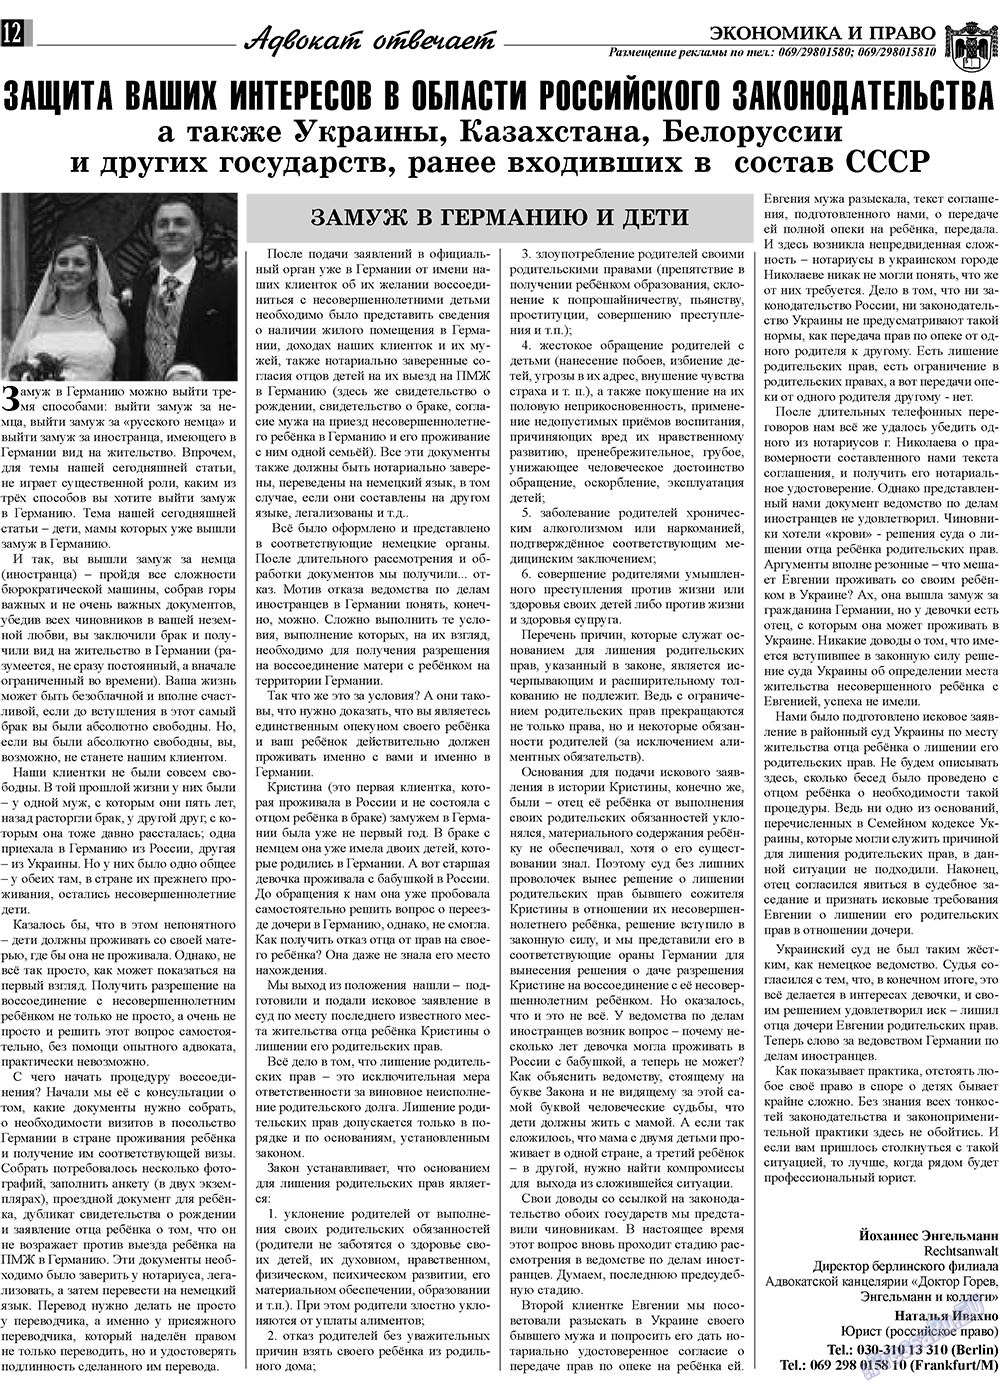 Экономика и право, газета. 2009 №11 стр.12